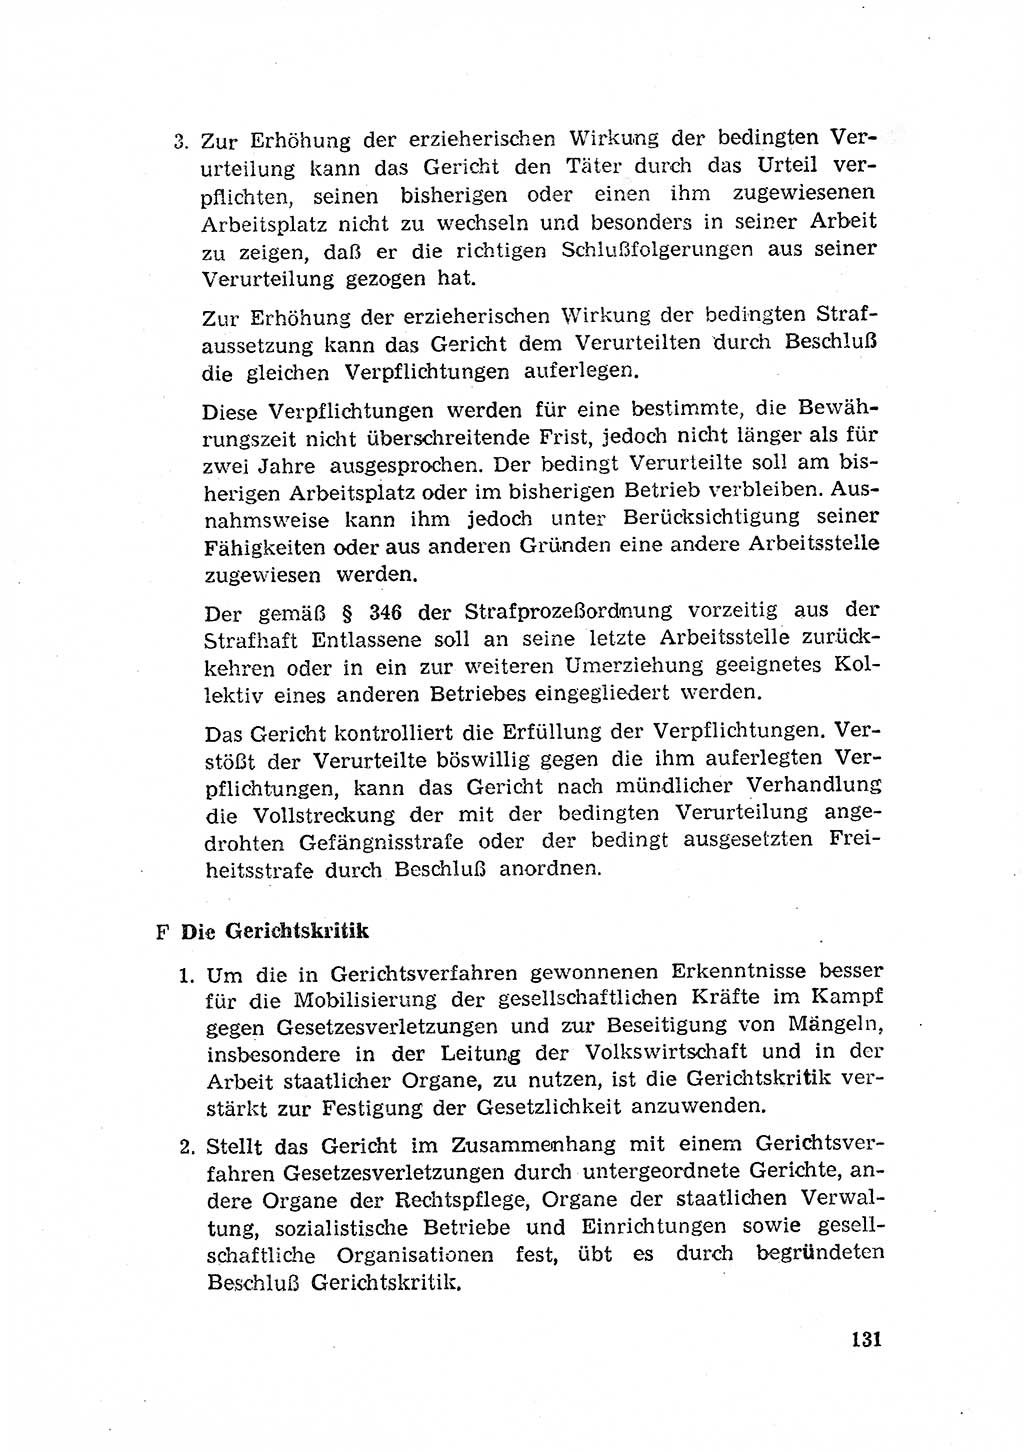 Rechtspflegeerlaß [Deutsche Demokratische Republik (DDR)] 1963, Seite 131 (R.-Pfl.-Erl. DDR 1963, S. 131)